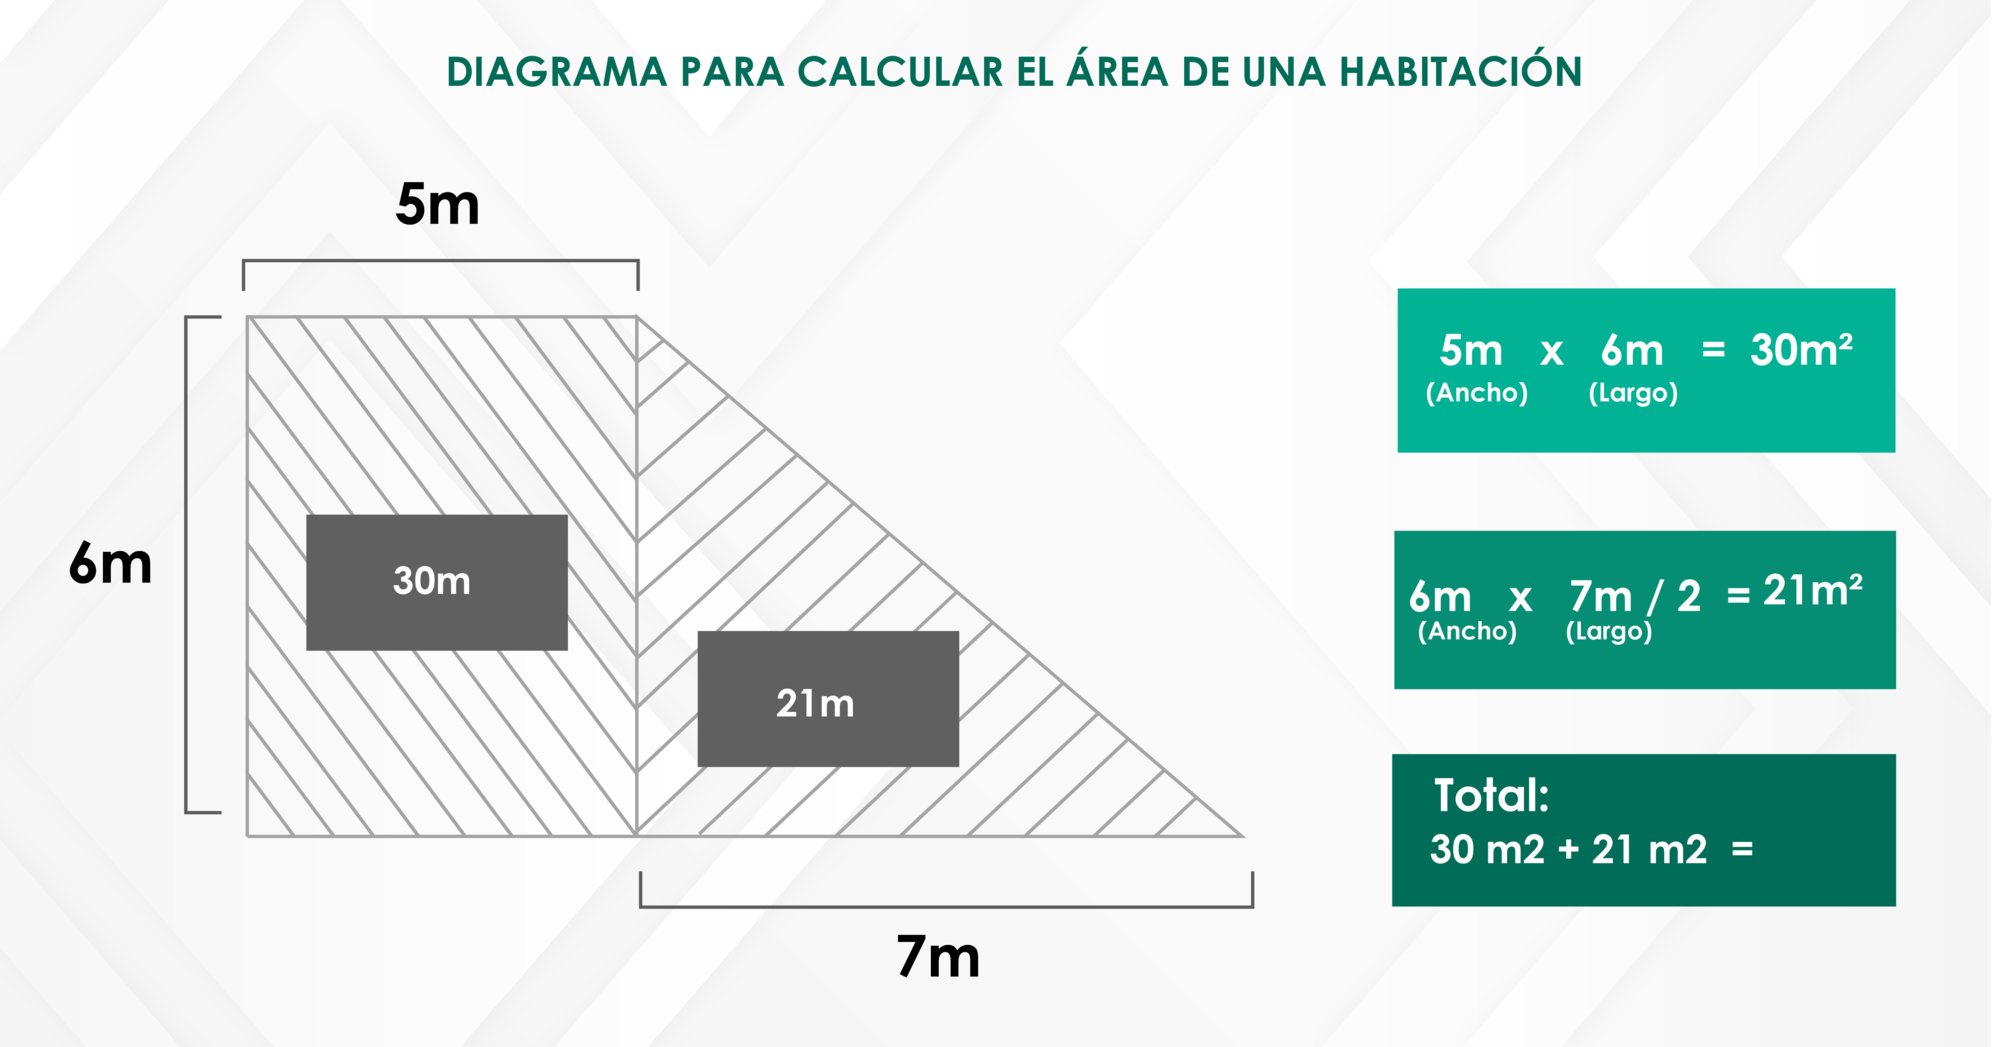 Diagrama para calcular el área de una habitación irregular